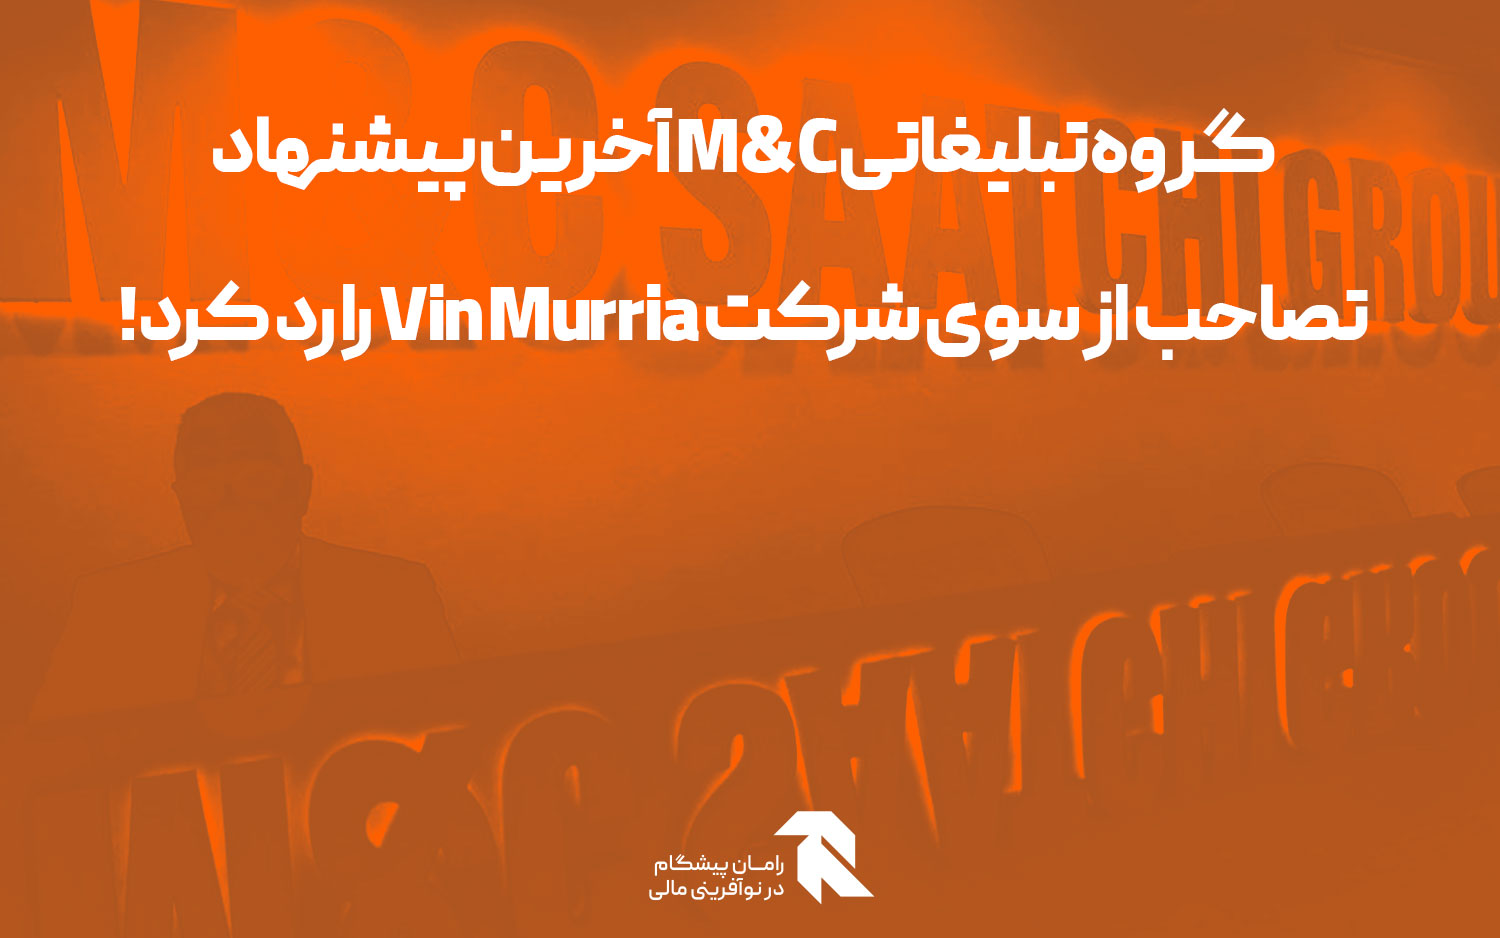 گروه تبلیغاتی M&C آخرین پیشنهاد تصاحب از سوی شرکت Vin Murria را رد کرد!